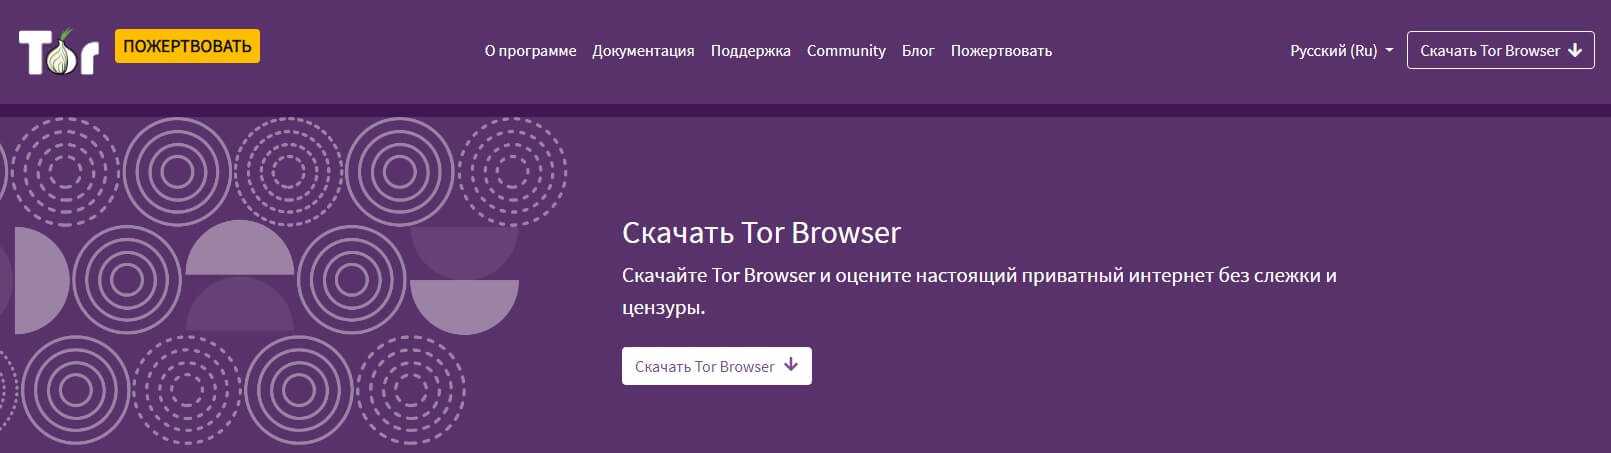 Браузеры для доступа в даркнет скачать tor browser на русском для андроид hydra2web